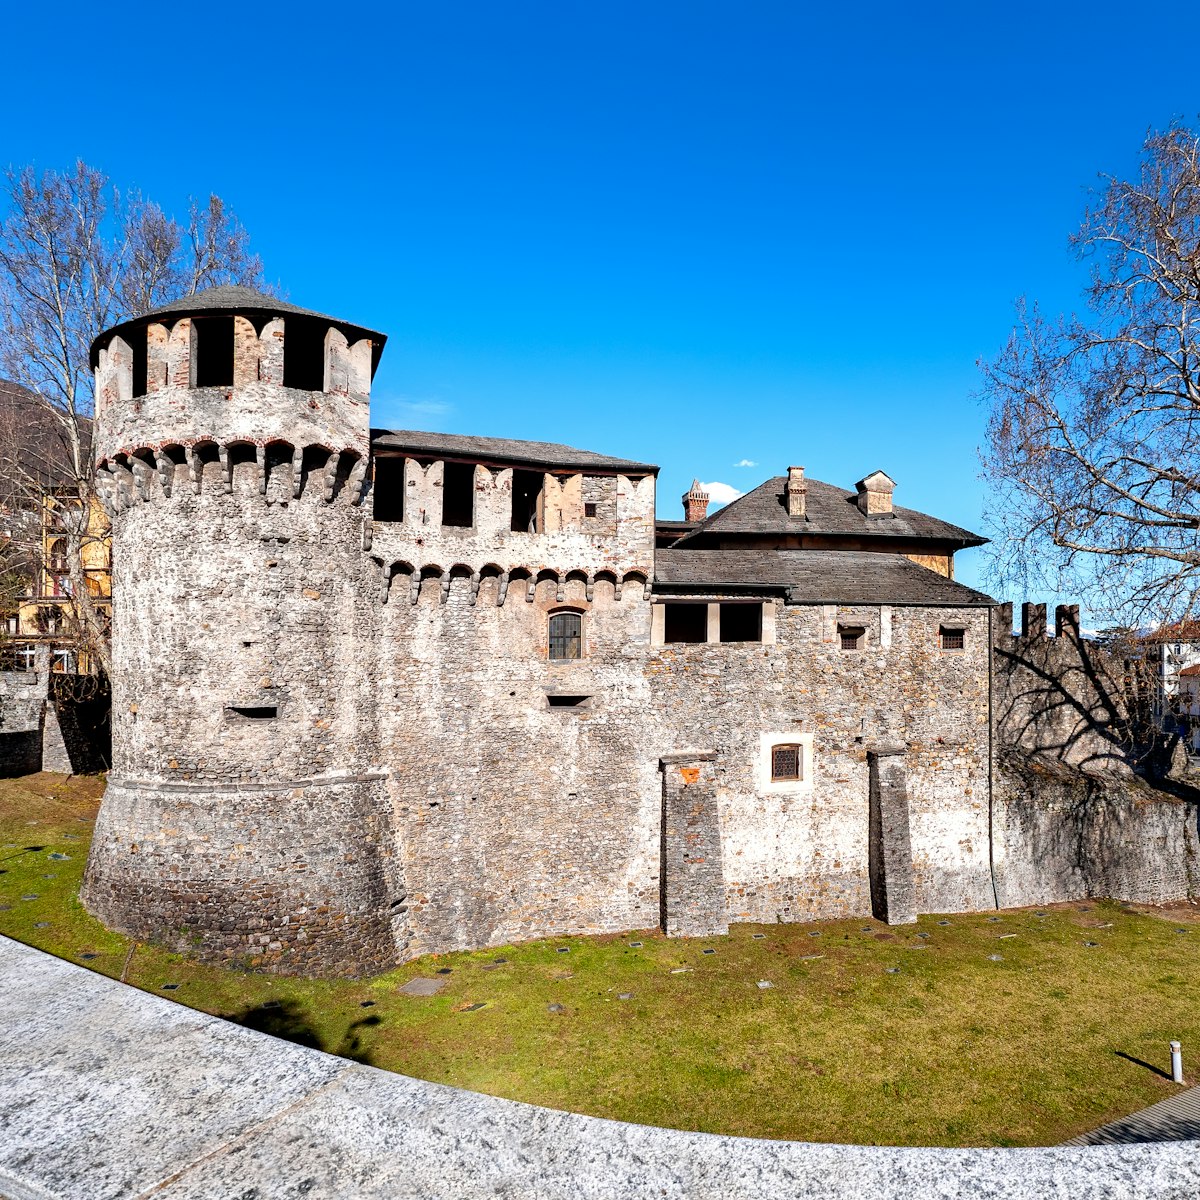 Castello Visconteo in Locarno, Switzerland.